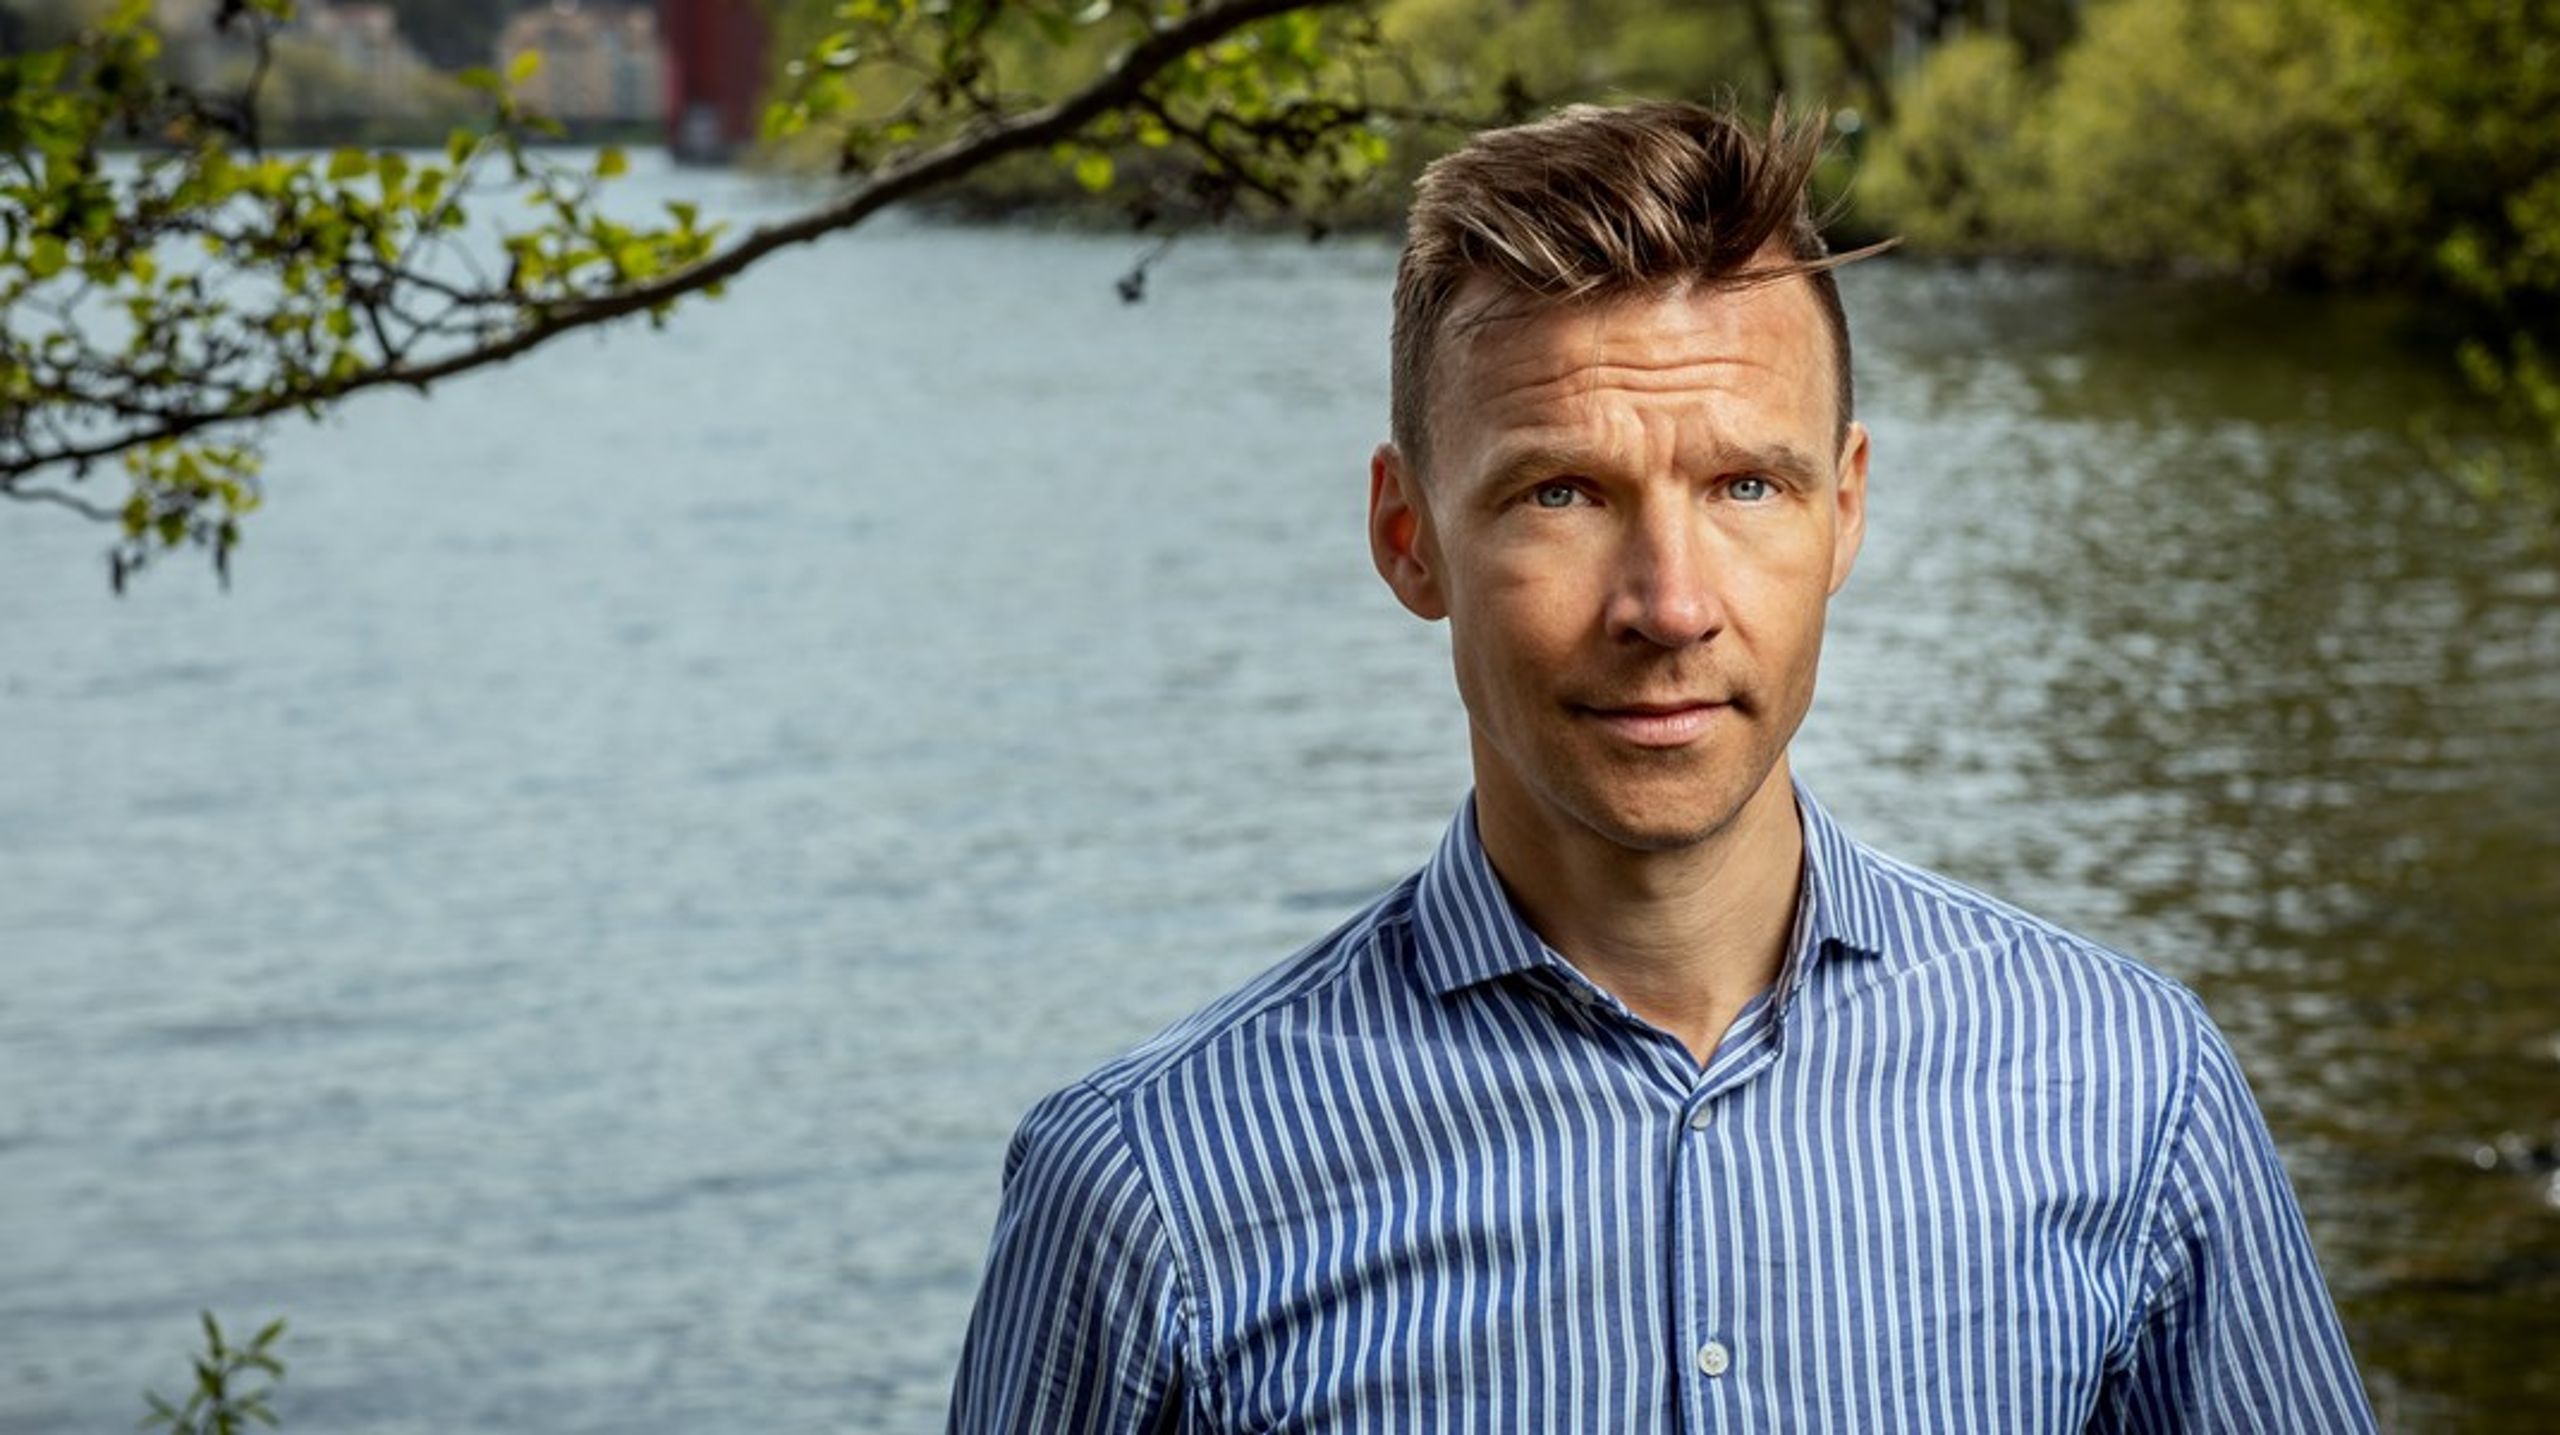 "Just nu är det många goda krafter som jobbar med för lite pengar i fel struktur." säger branschorganisationen Svenskt vattens vd Pär Dalhielm om vattenförvaltningen.